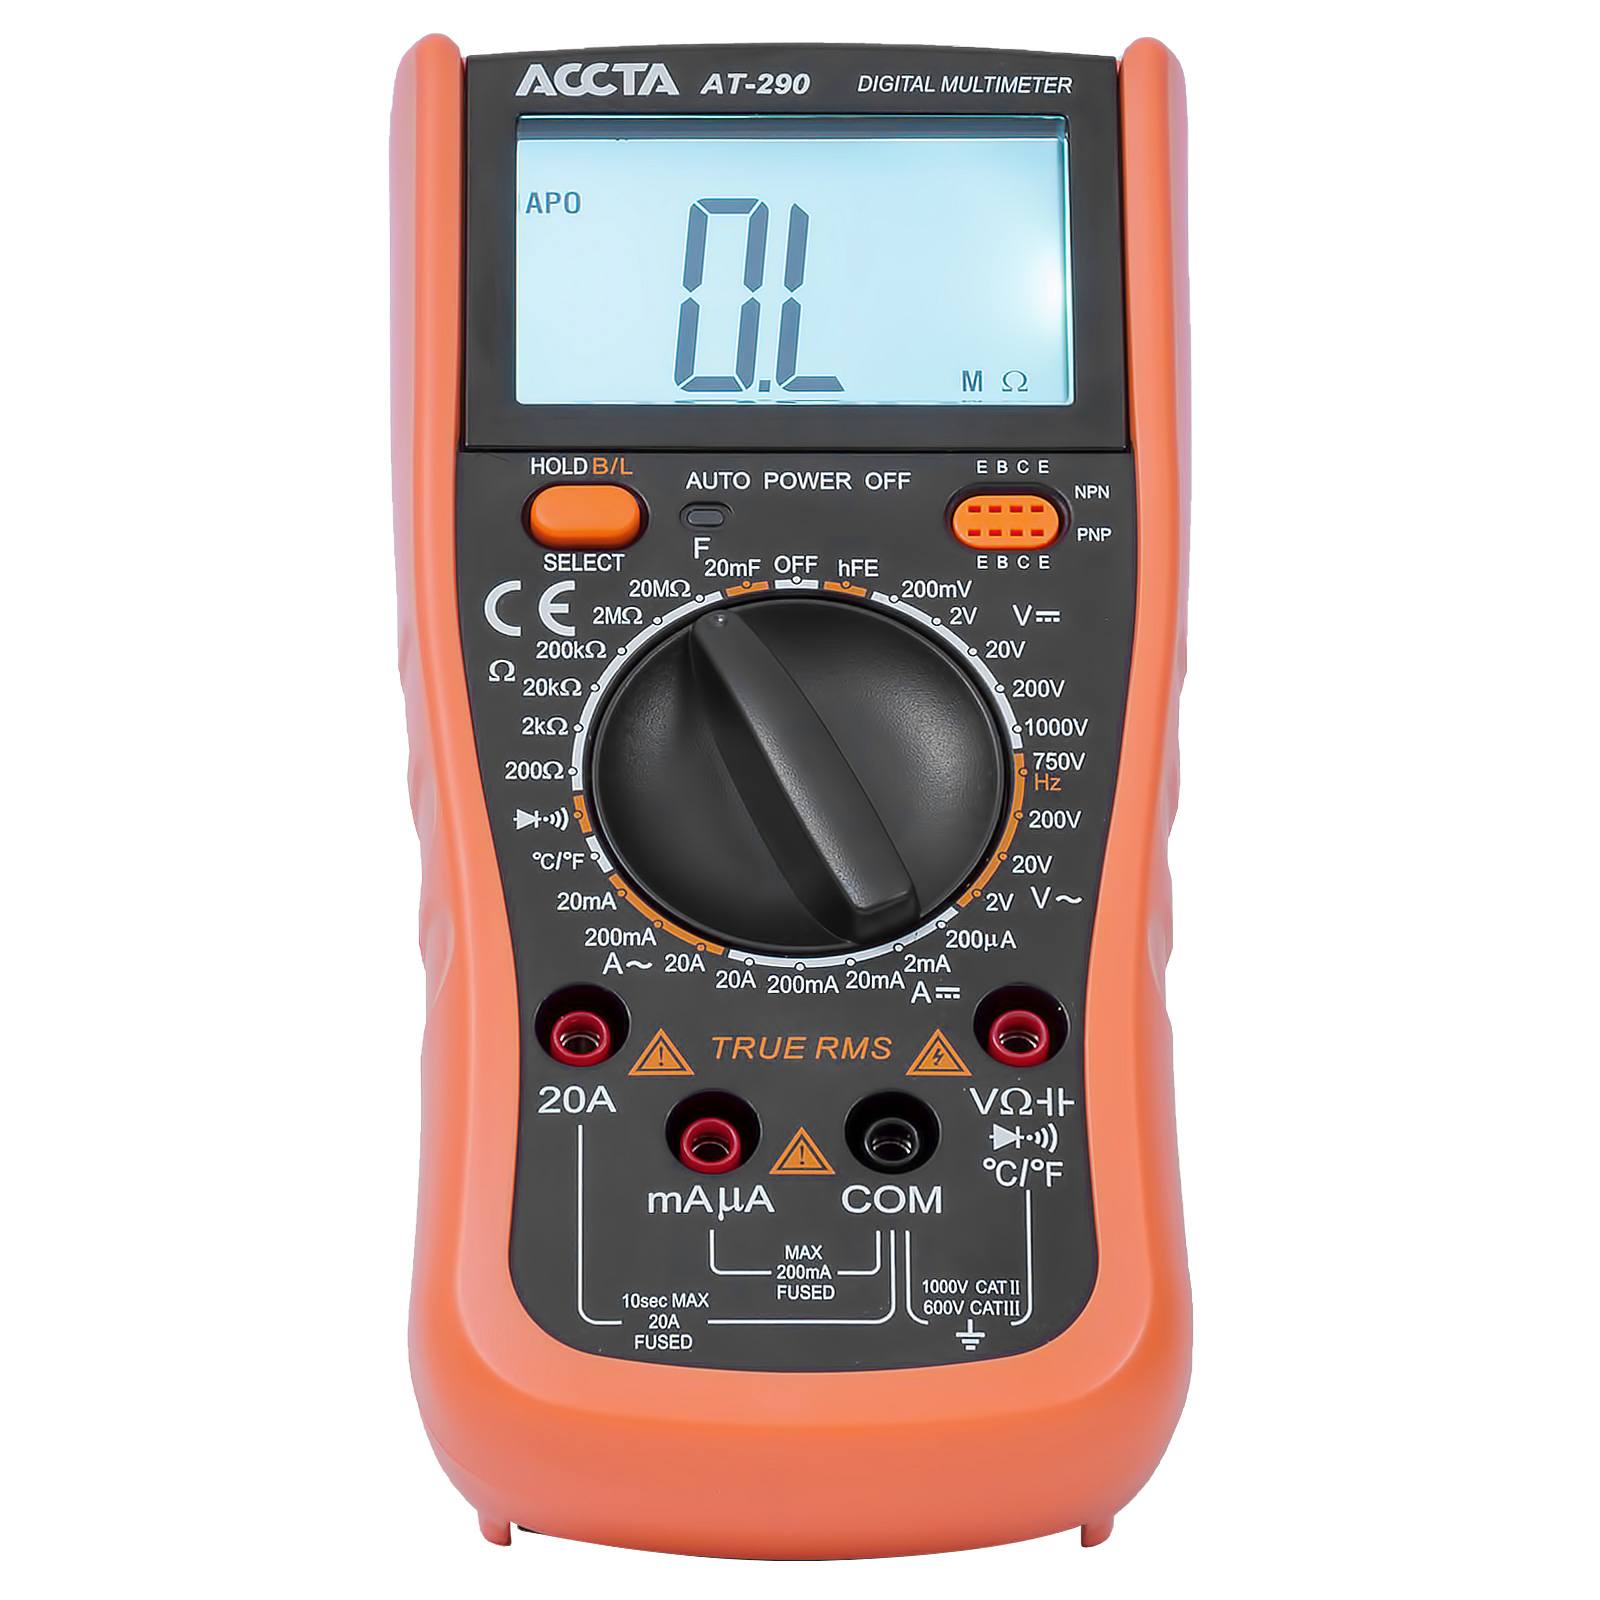 Digital Multimeter Accta AT-290